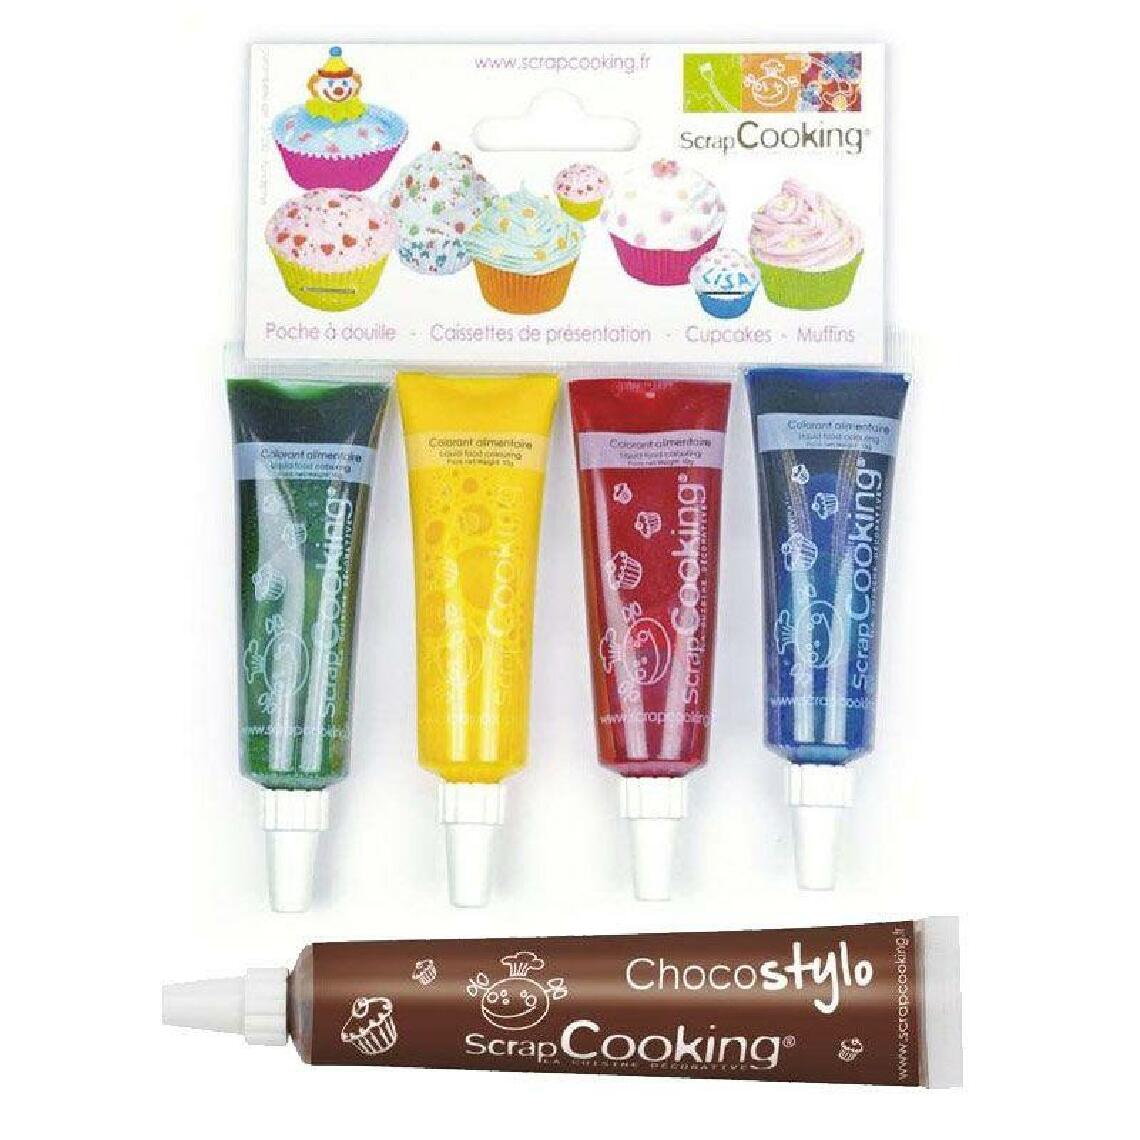 Scrapcooking - 4 colorants alimentaires liquides bleu, rouge, jaune, vert + 1 Stylo chocolat offert - Kits créatifs